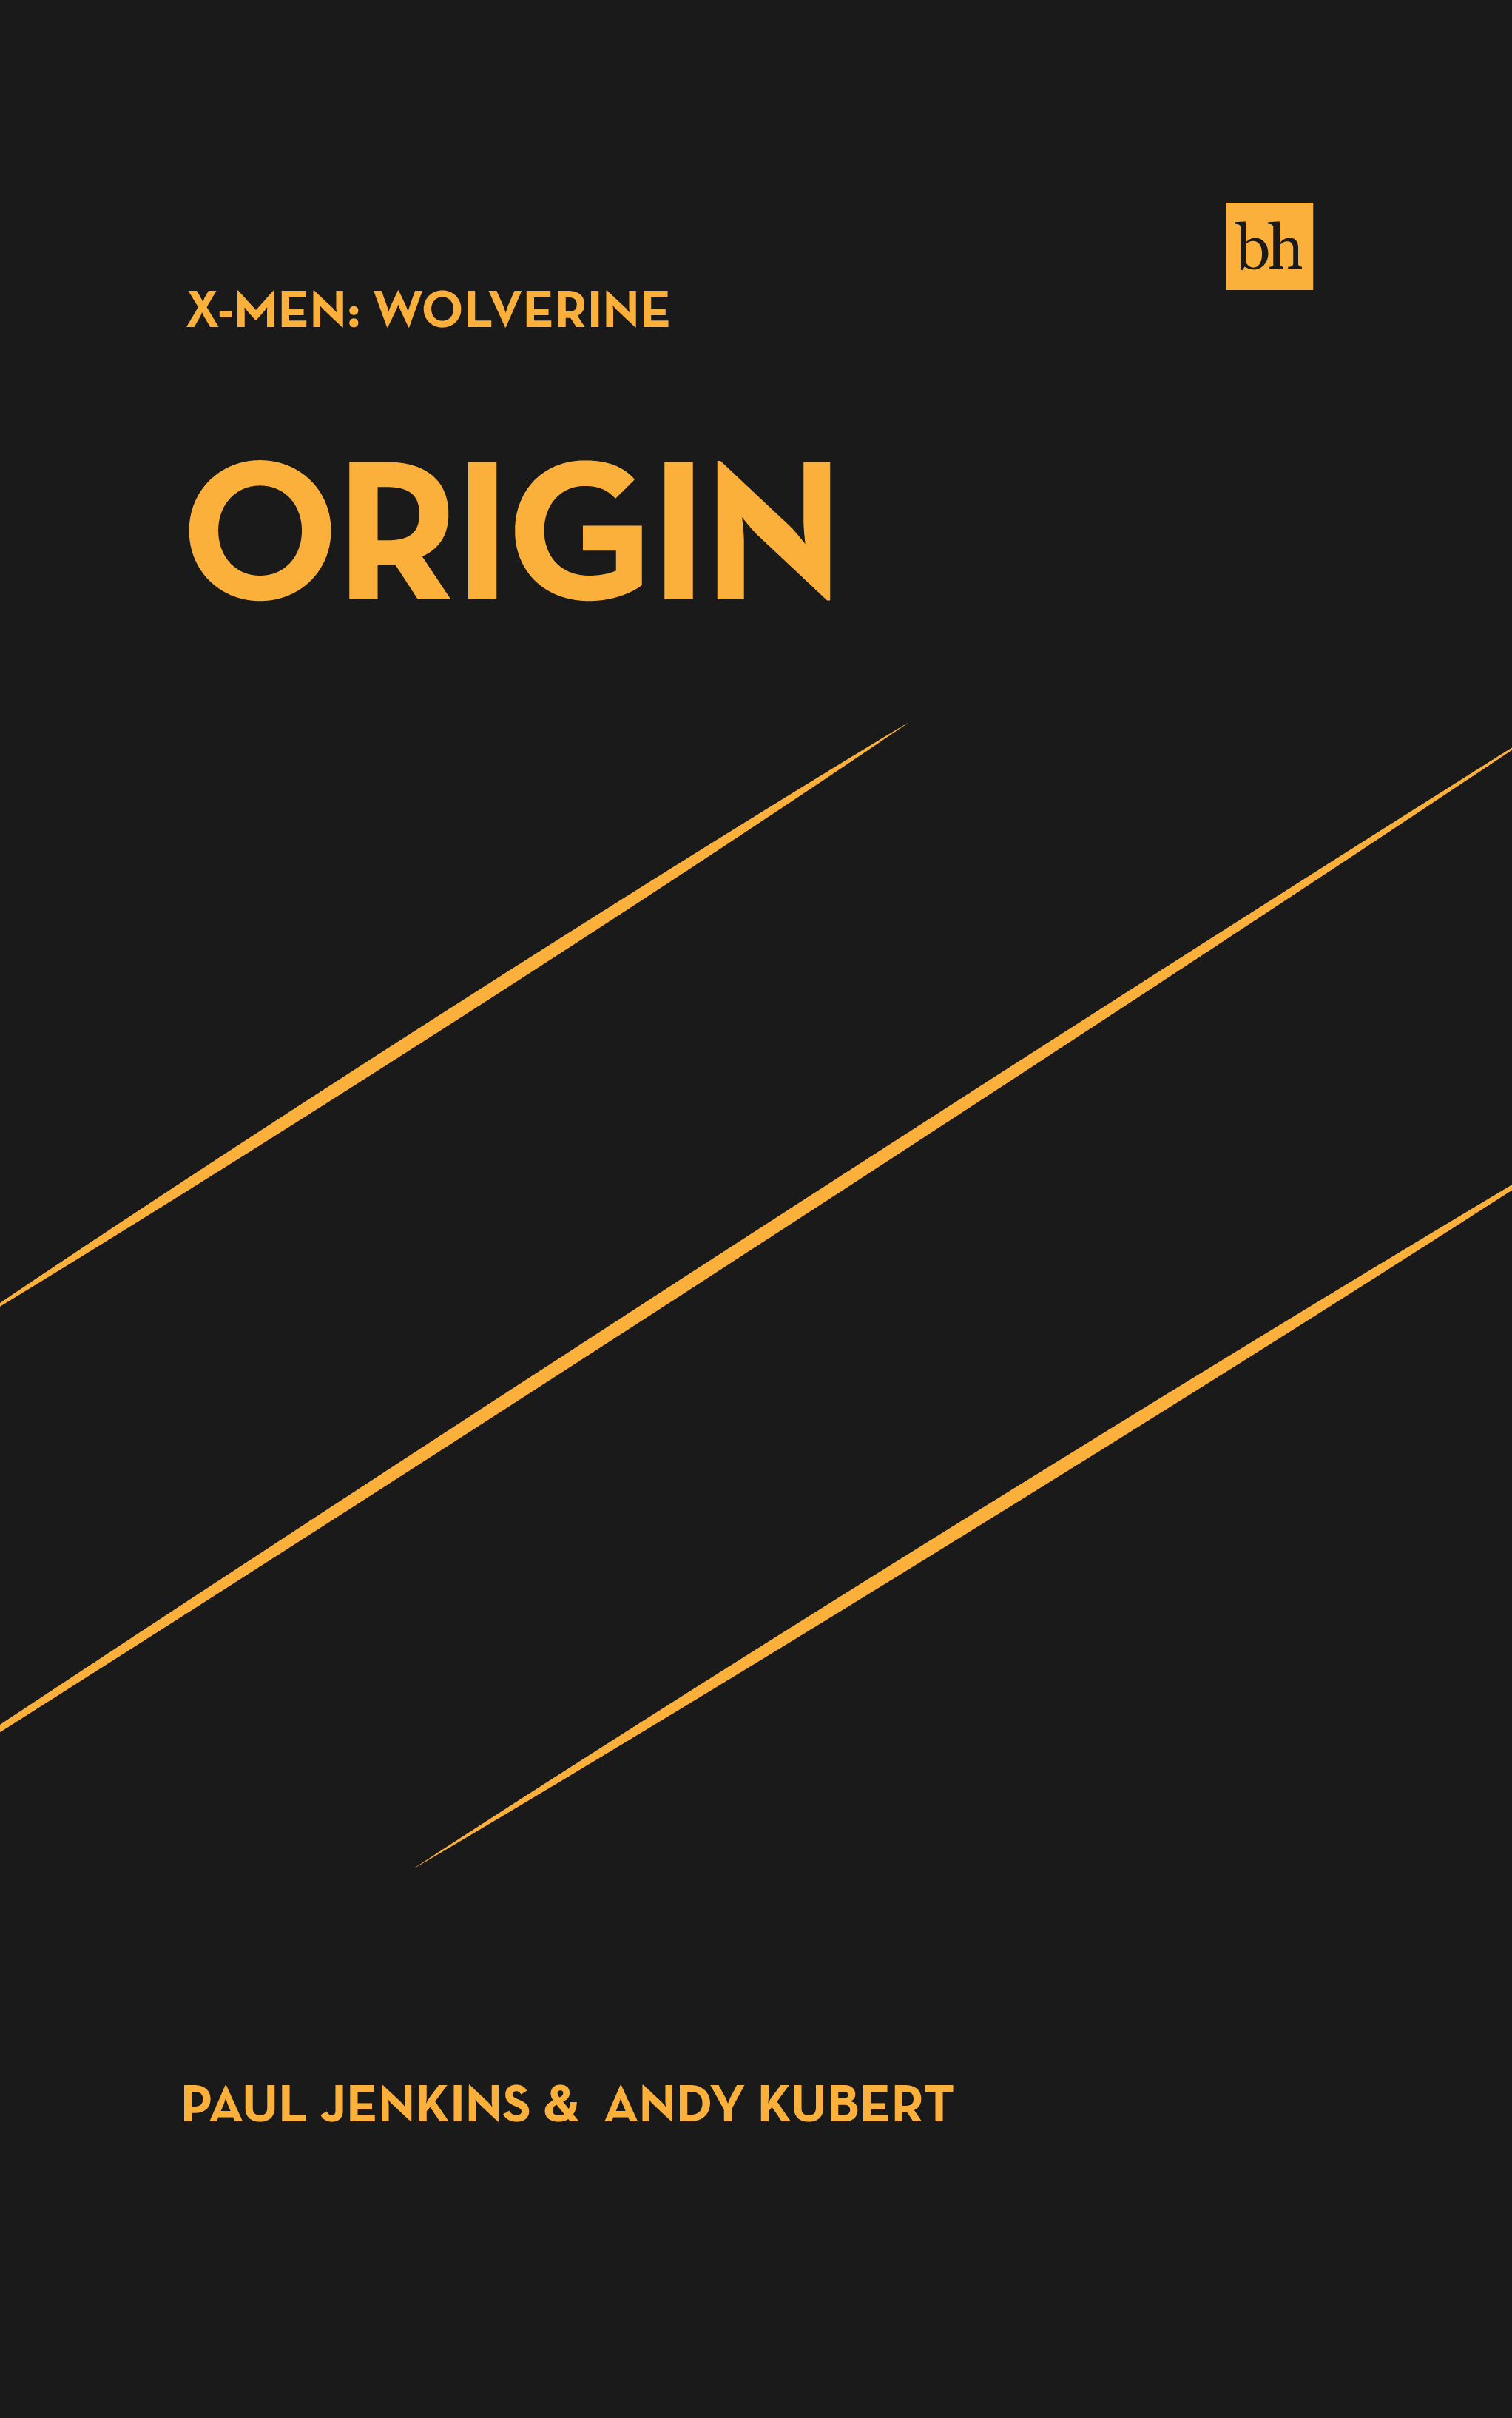 X-Men Wolverine: Origin by Paul Jenkins